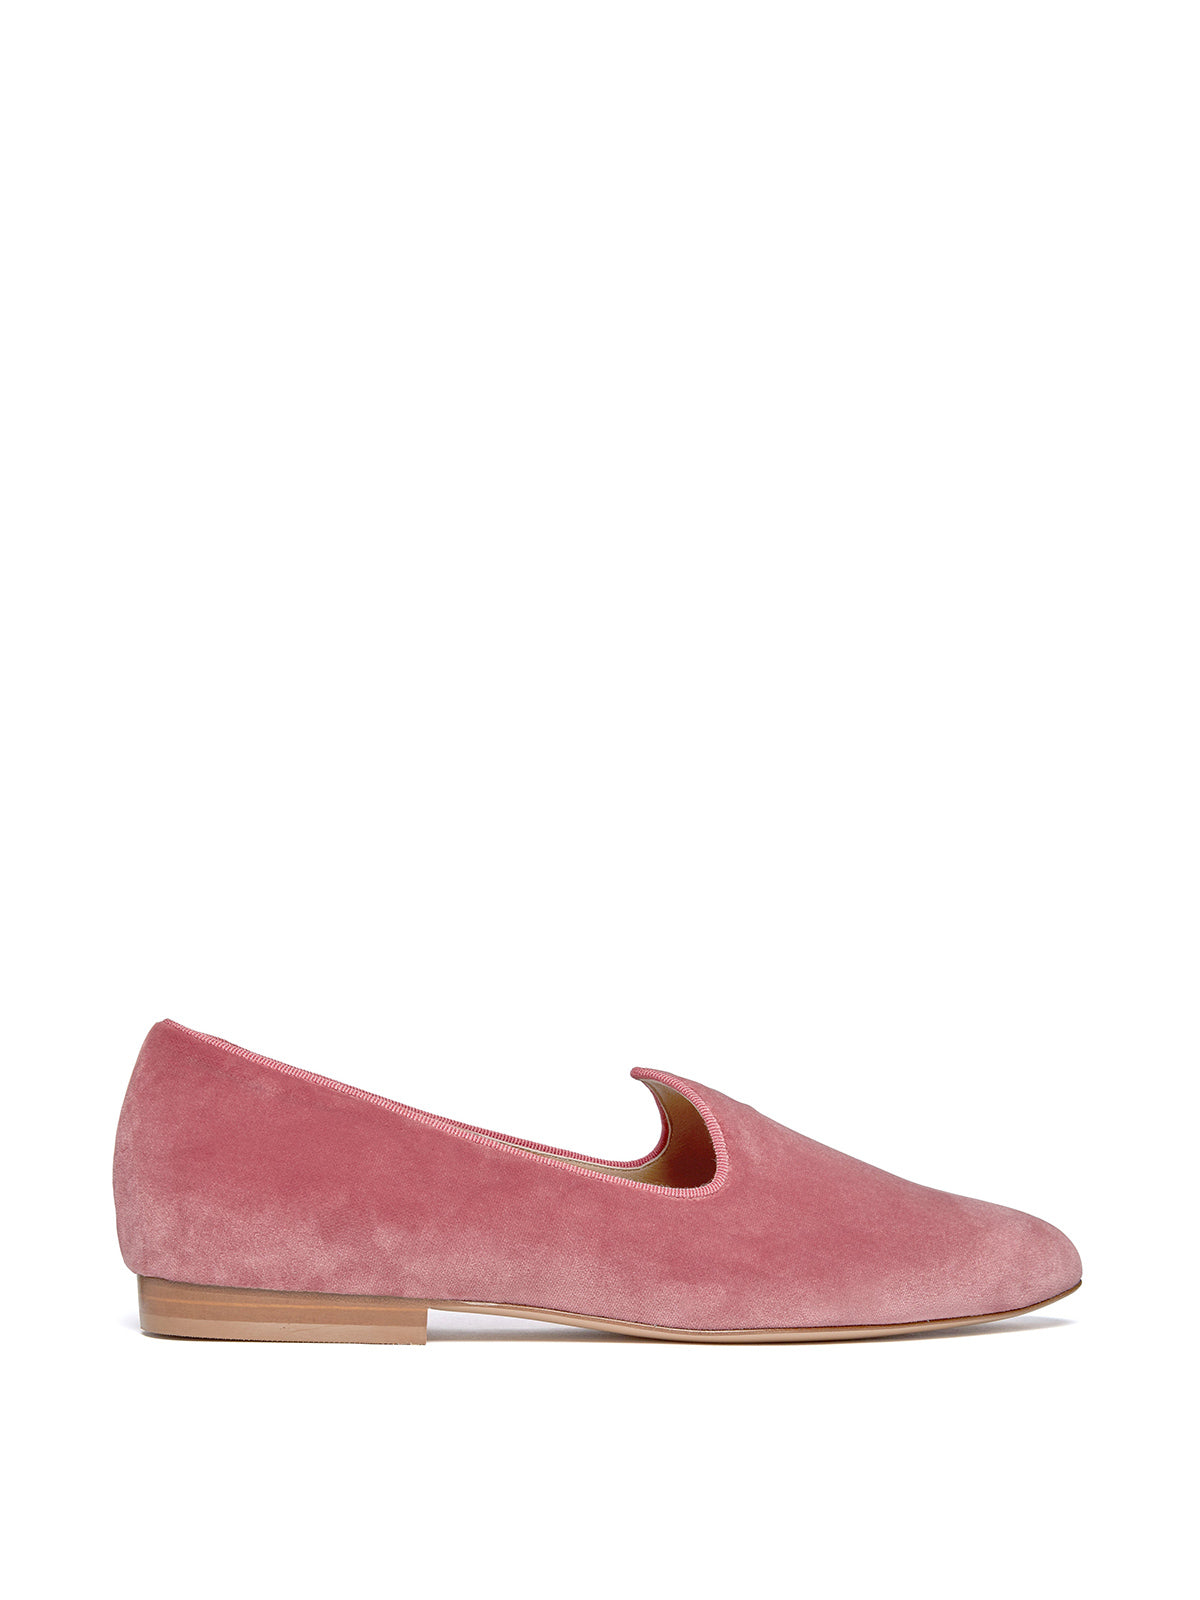 Venetian Slipper in Velvet Blush Pink